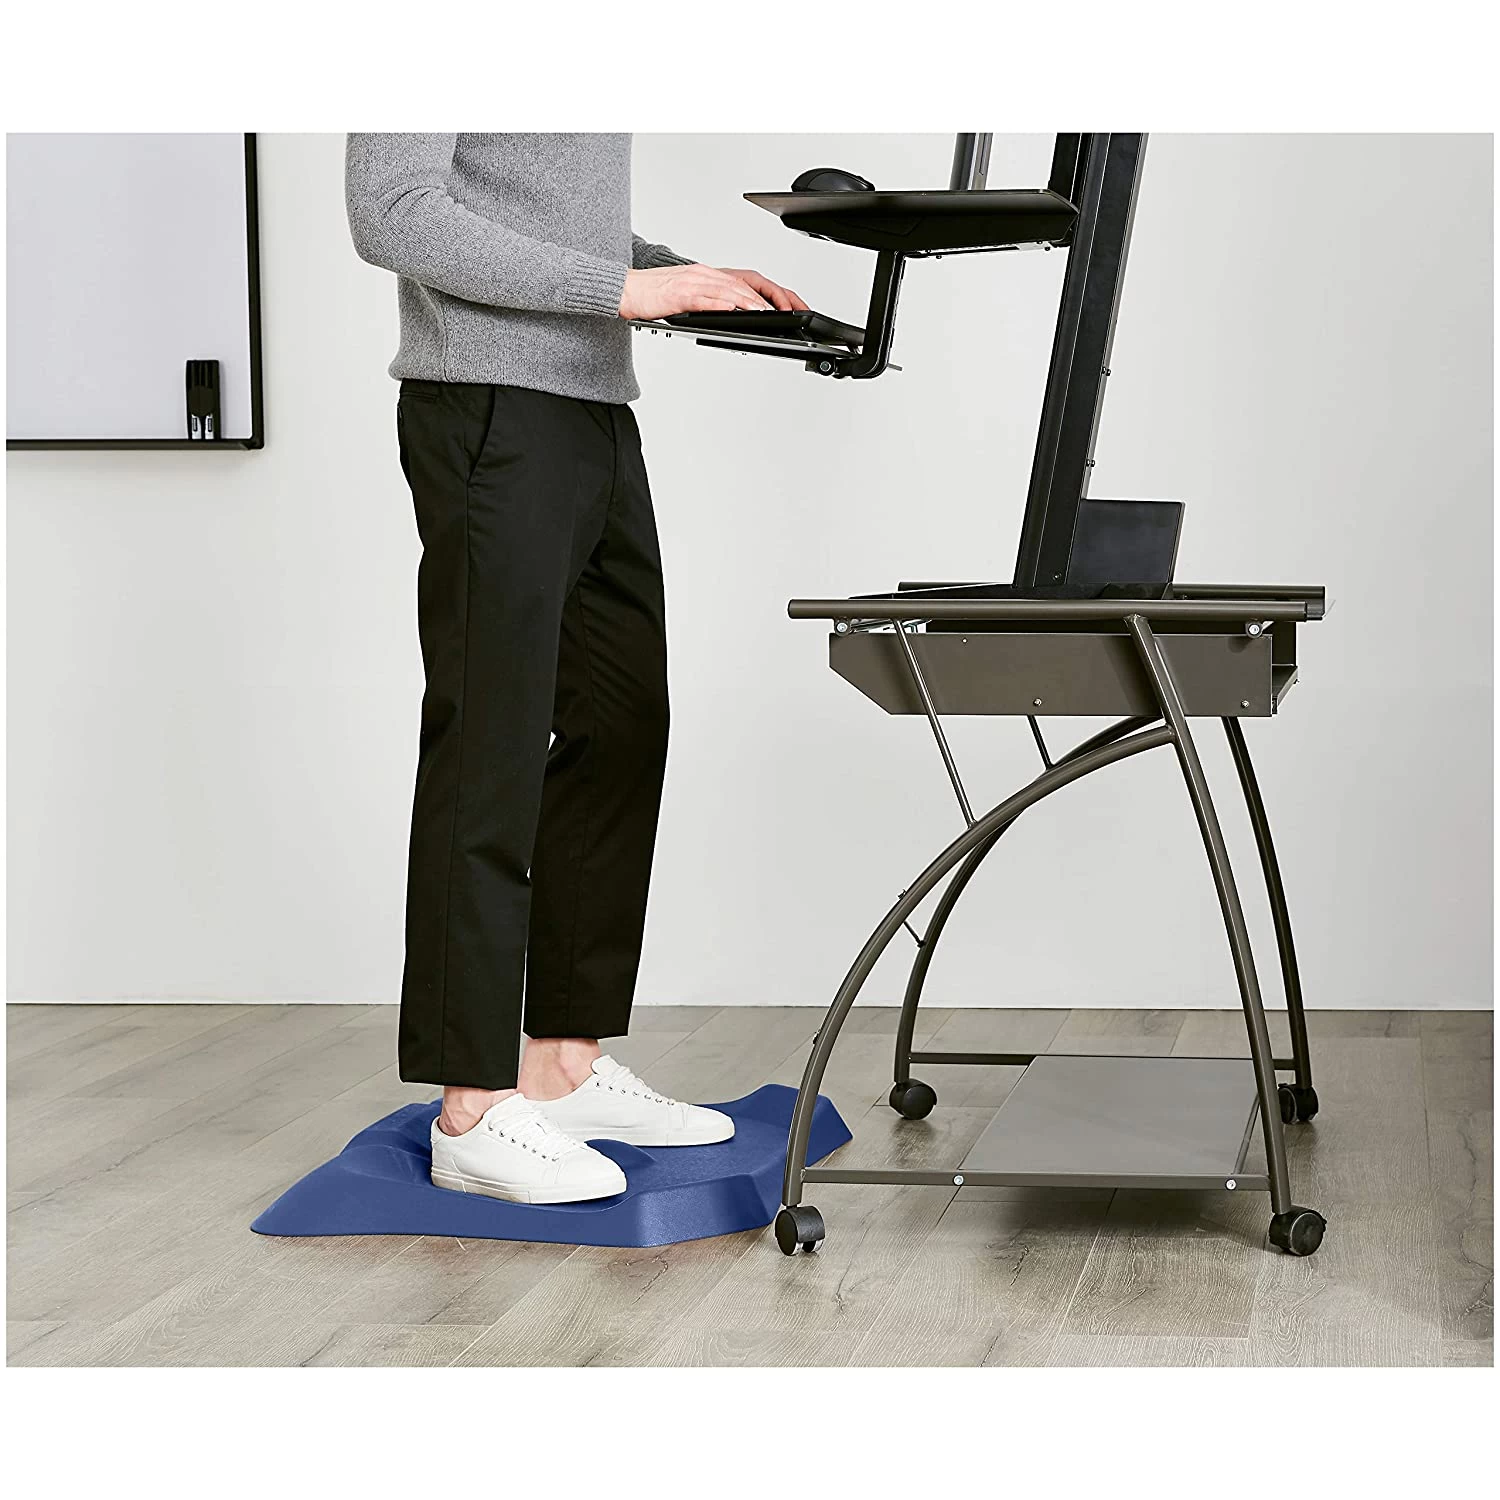 PU foam mat supplier anti fatigue not flat standing desk mat